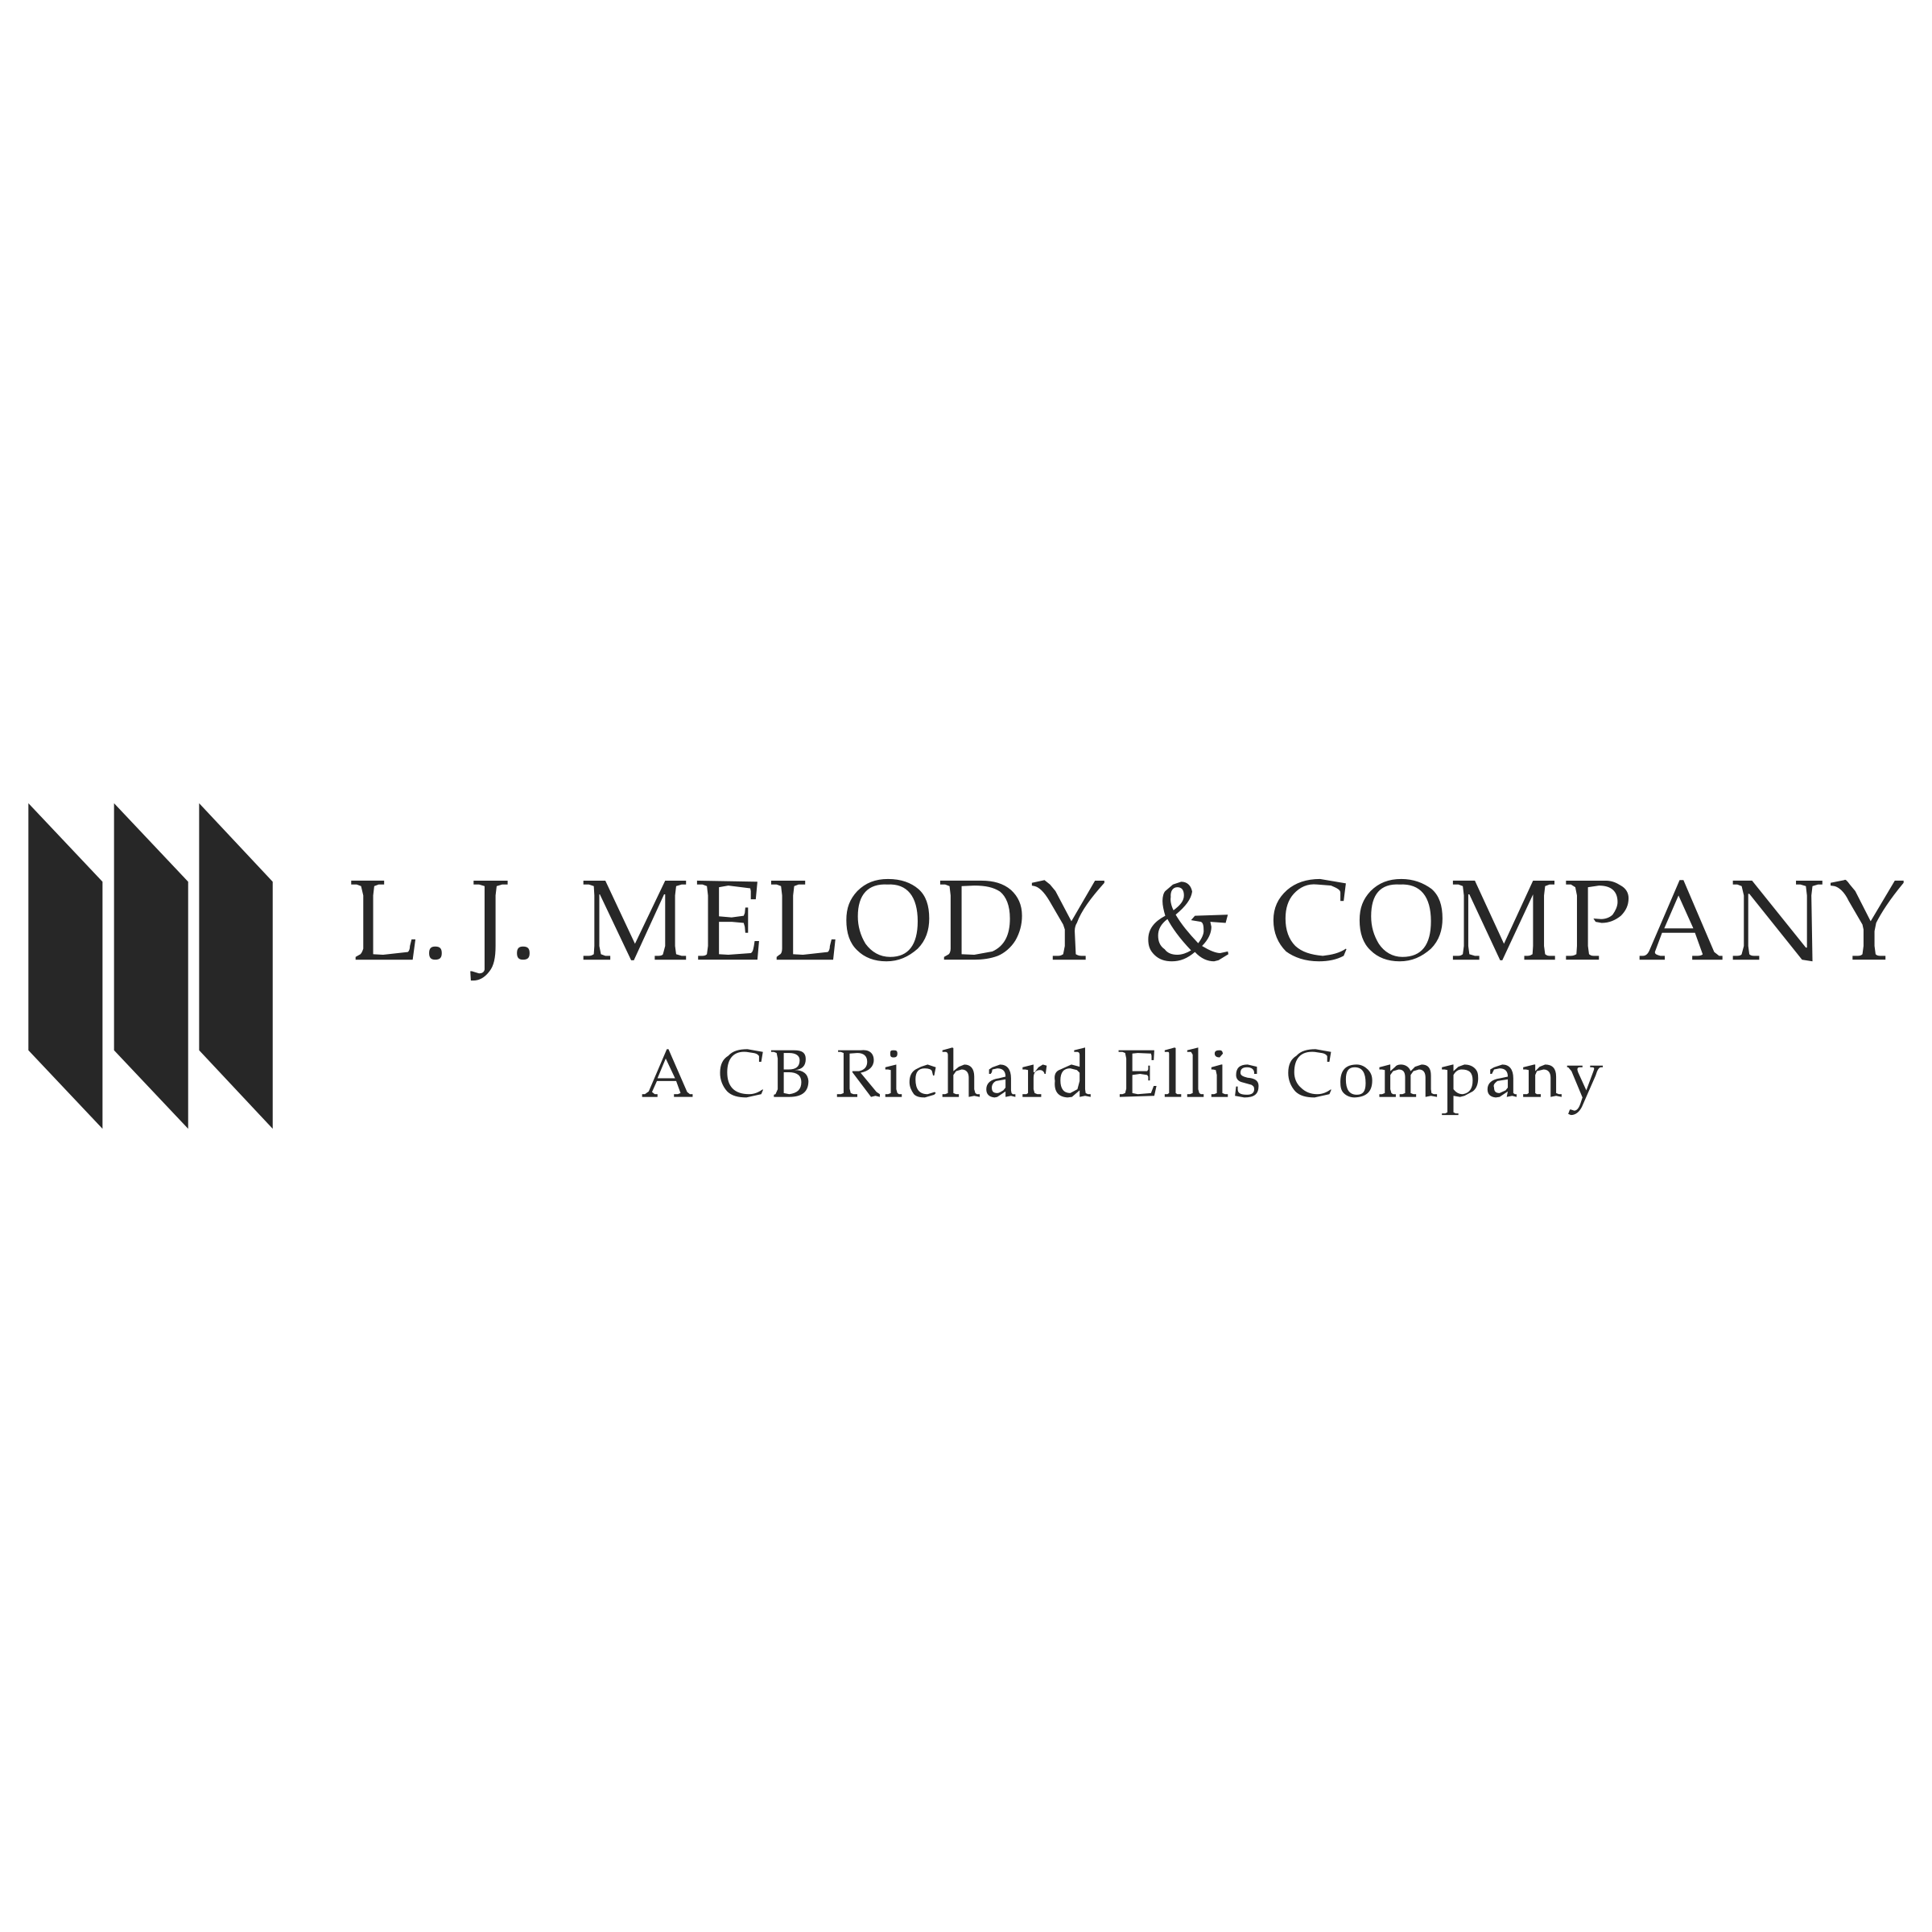 L Company Logo - L J Melody & Company Logo PNG Transparent & SVG Vector